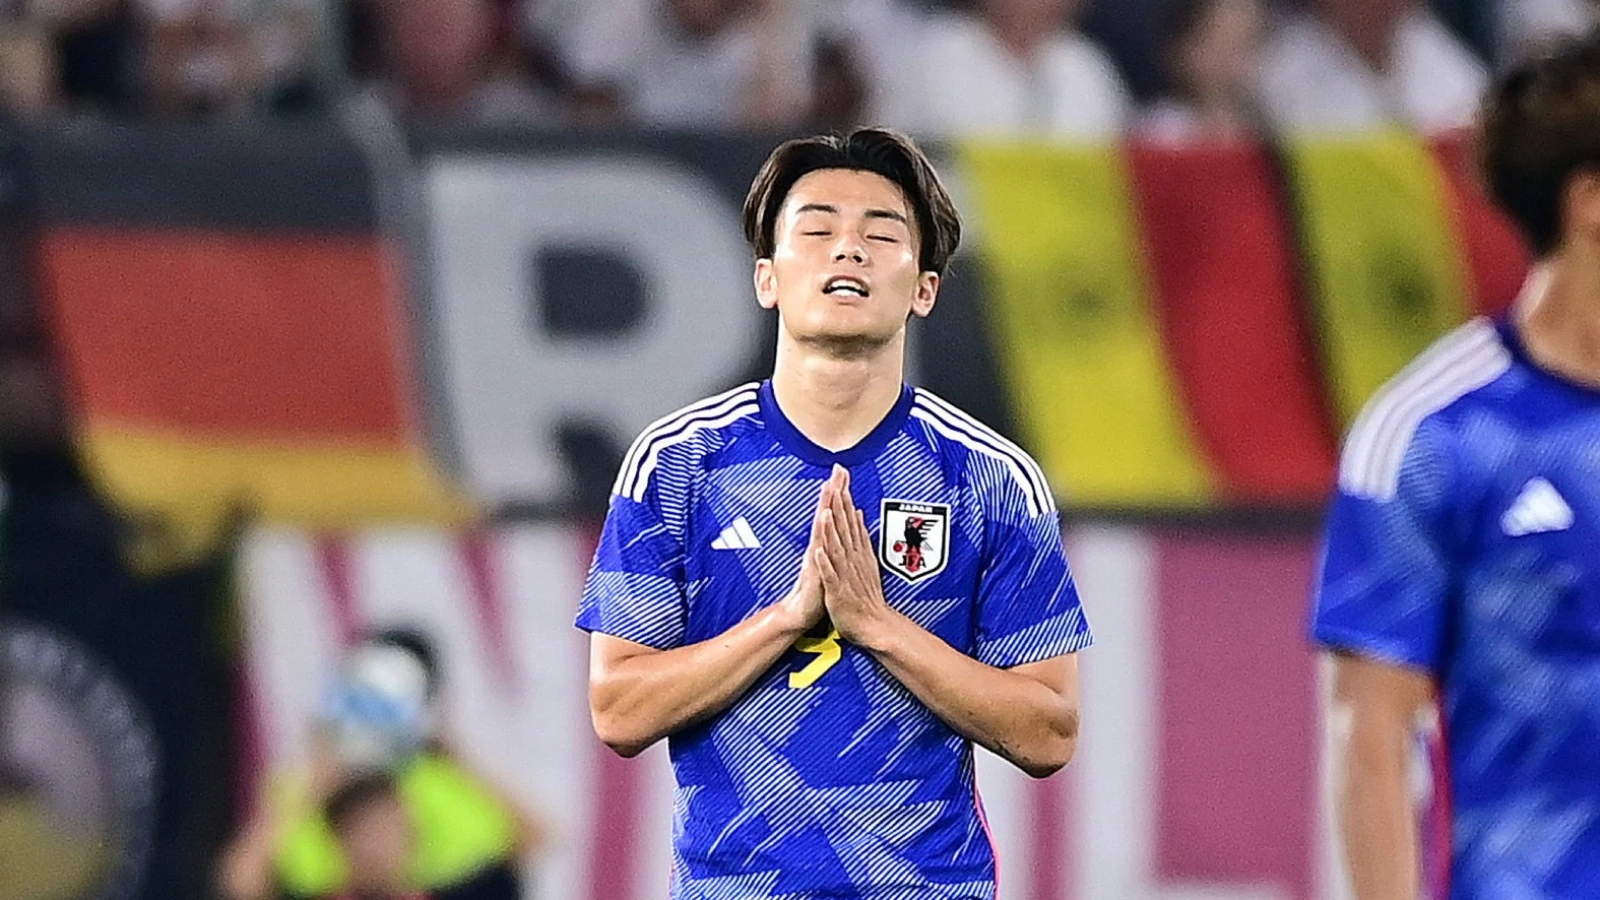 Ueda eist met hattrick wedstrijdbal op voor zieke vriend